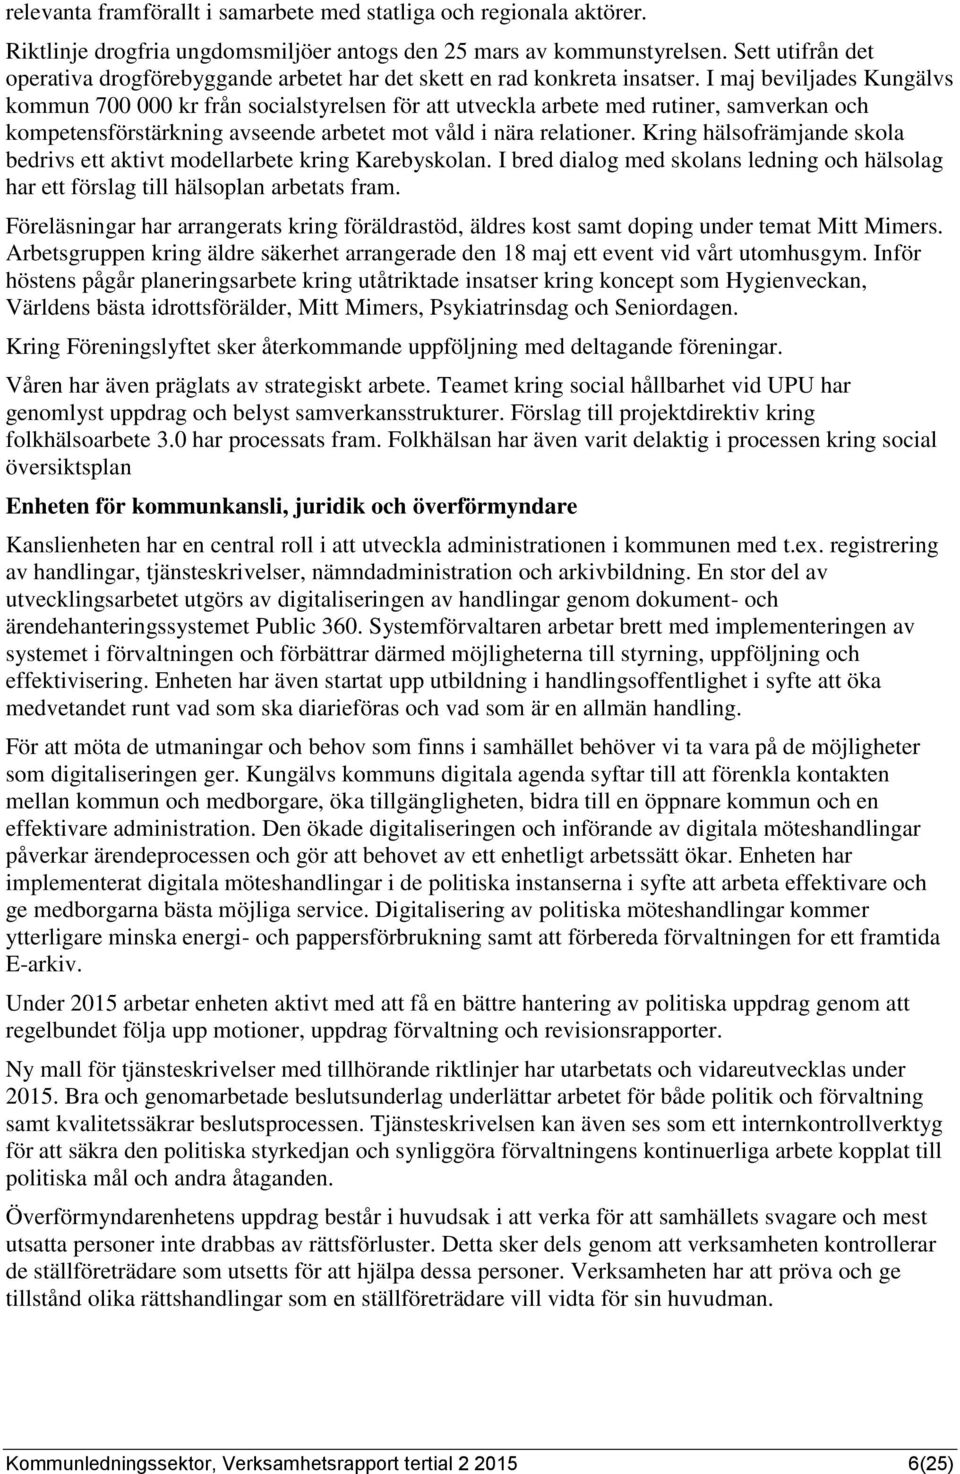 I maj beviljades Kungälvs kommun 700 000 kr från socialstyrelsen för att utveckla arbete med rutiner, samverkan och kompetensförstärkning avseende arbetet mot våld i nära relationer.